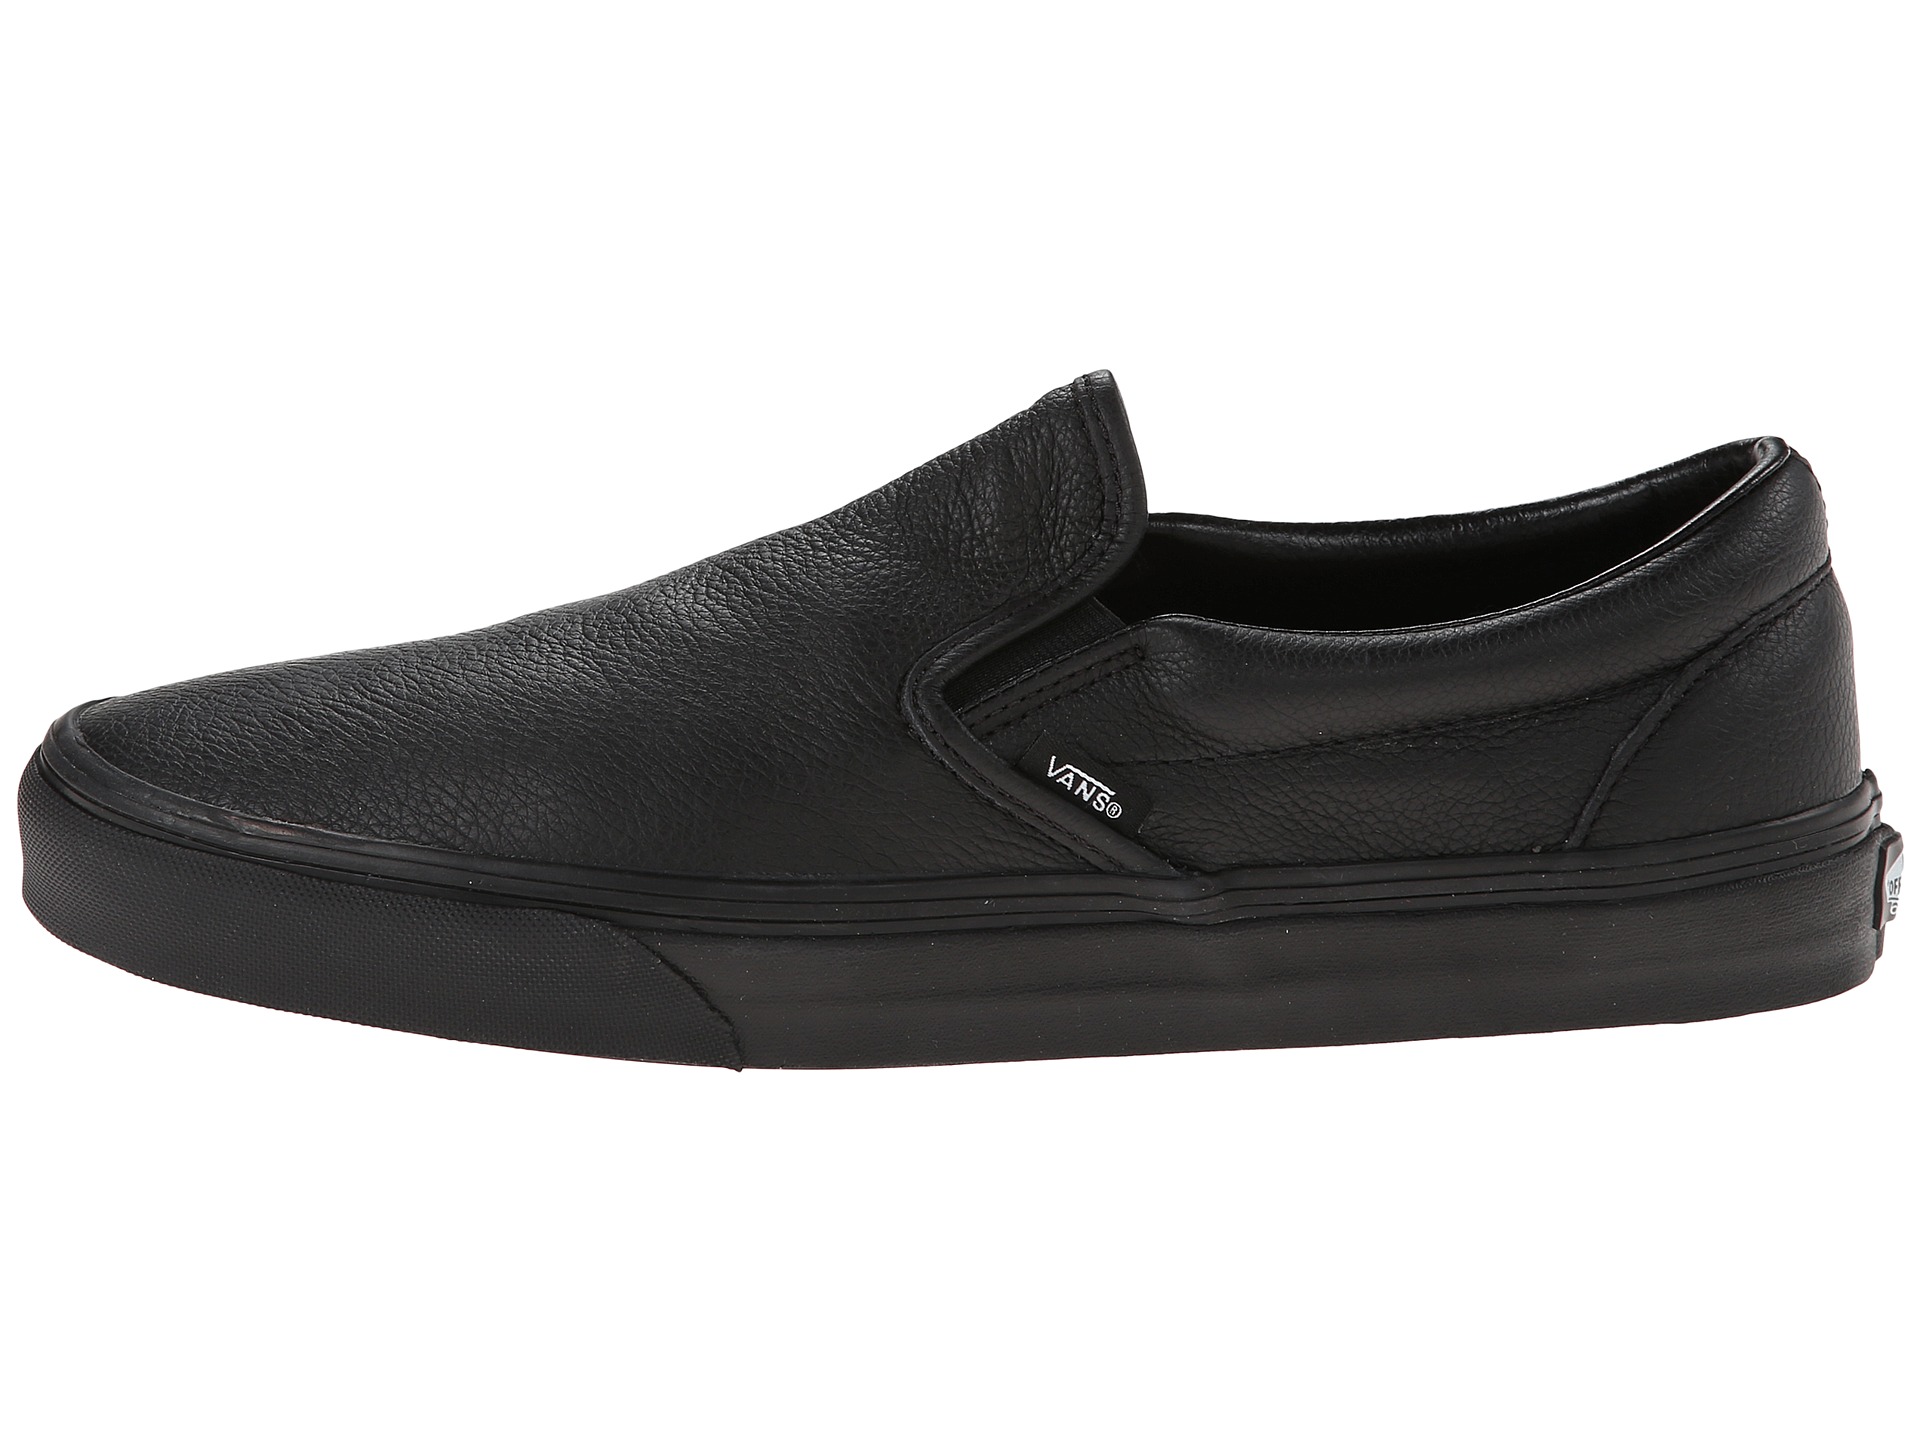 Vans Classic Slip-On™ (Premium Leather) Black/Mono - Zappos.com Free ...